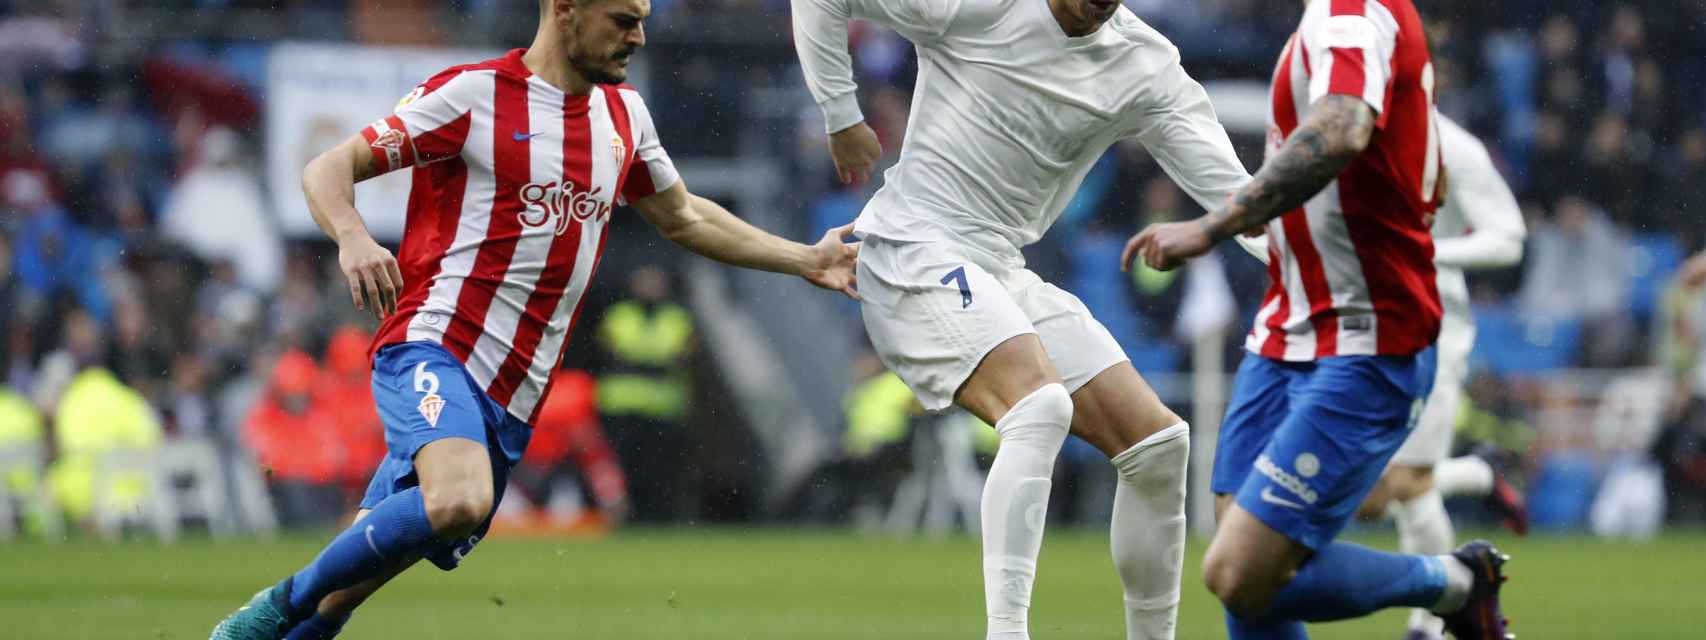 Siga en vivo el Real Madrid - Sporting de Gijón